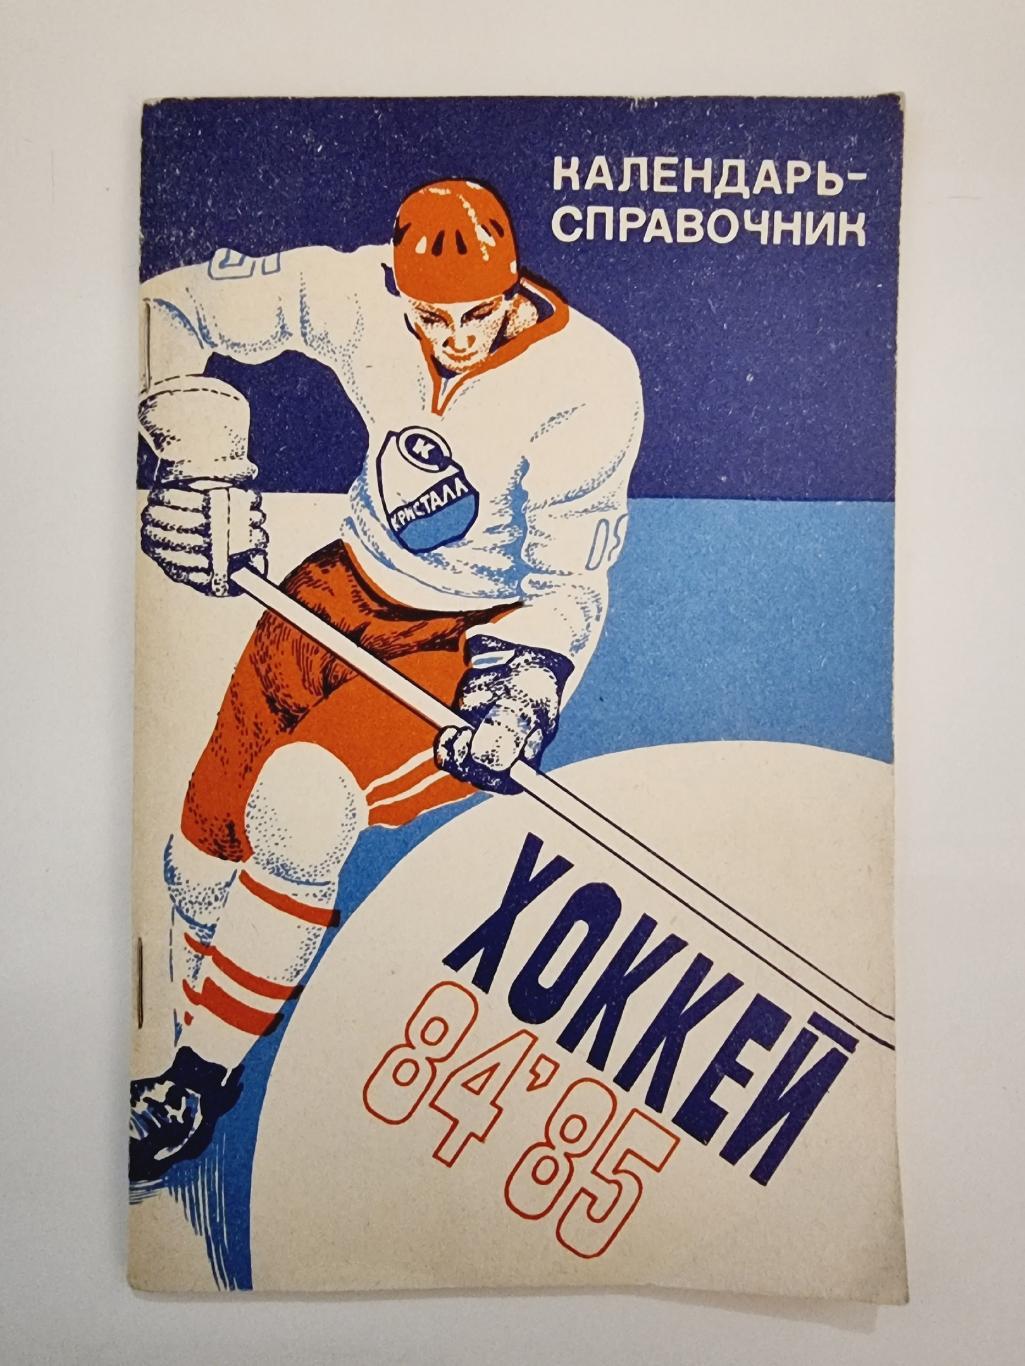 Хоккей. Саратов 1984/85 (64 страницы)